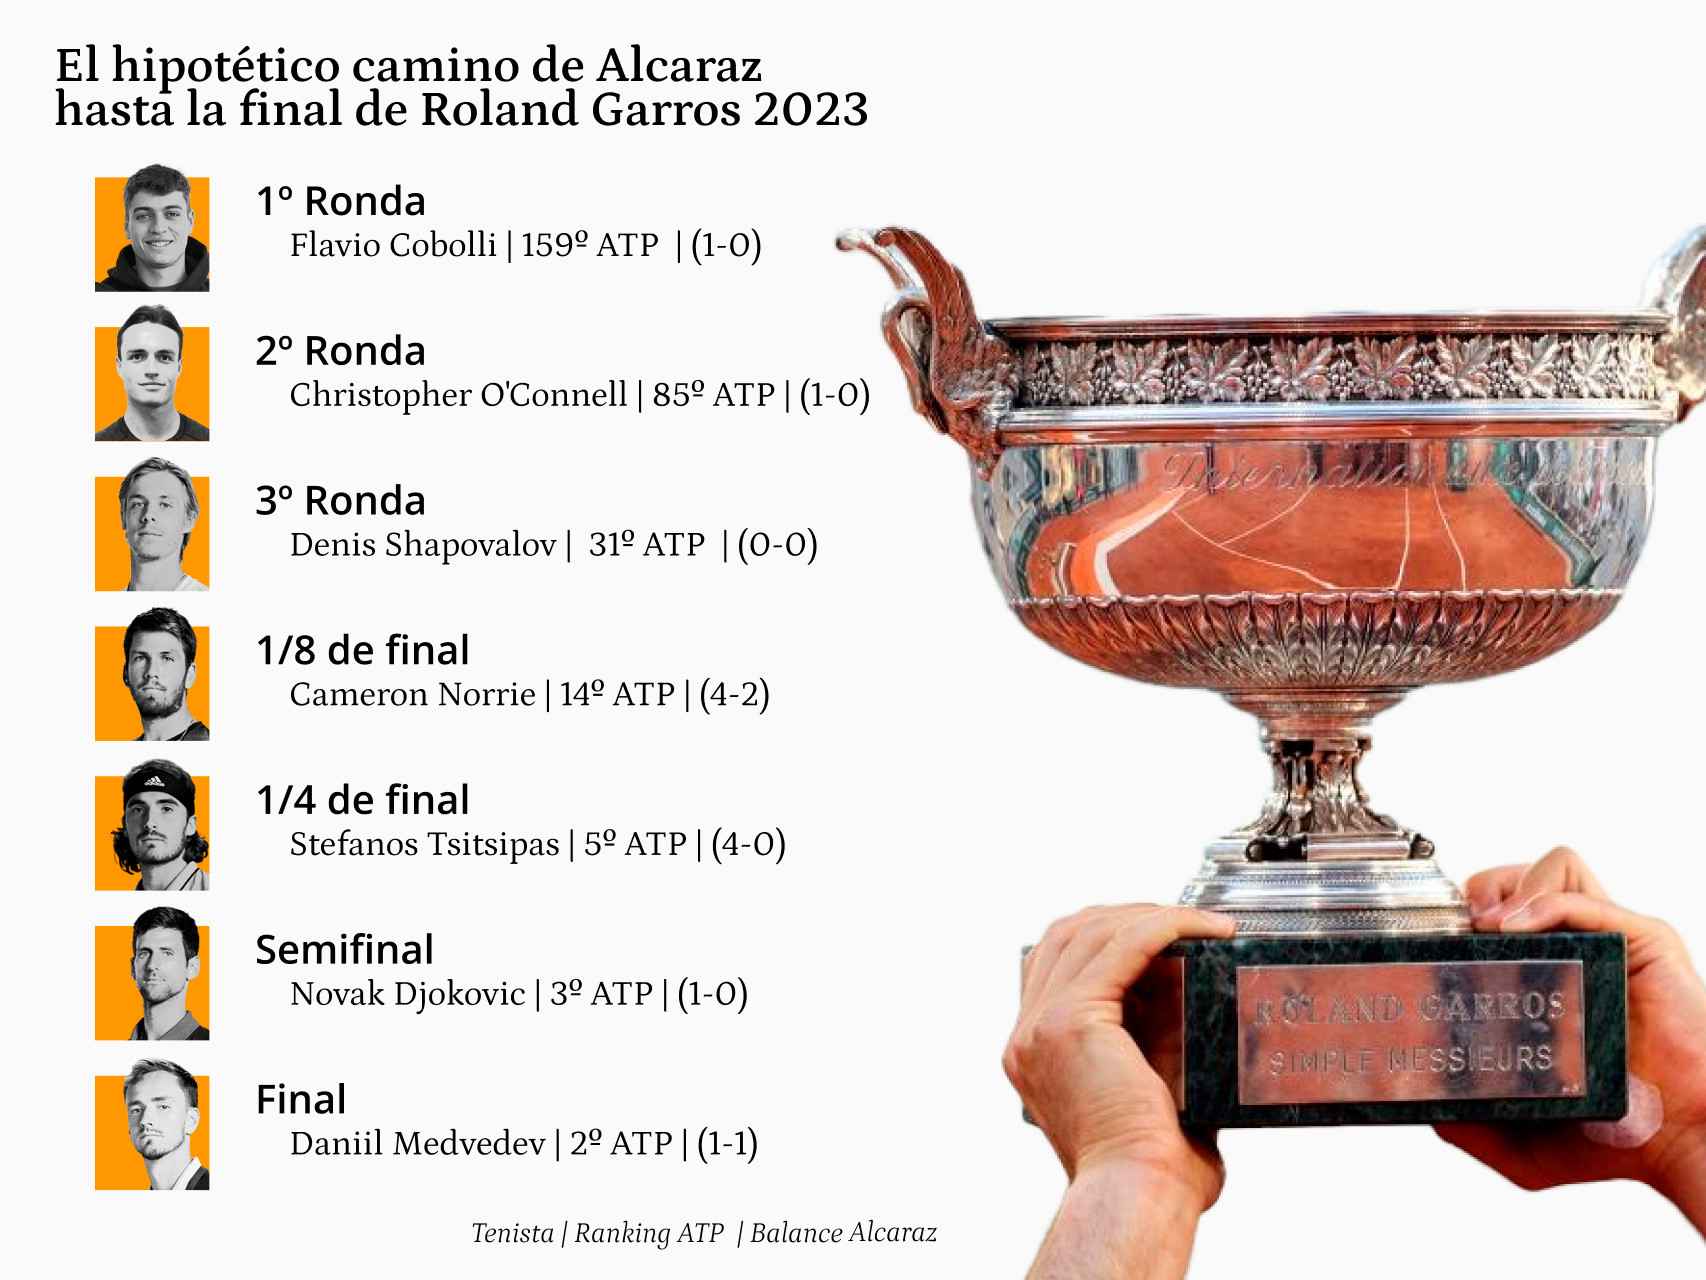 El hipotético camino de Carlos Alcaraz hasta la final de Roland Garros 2023